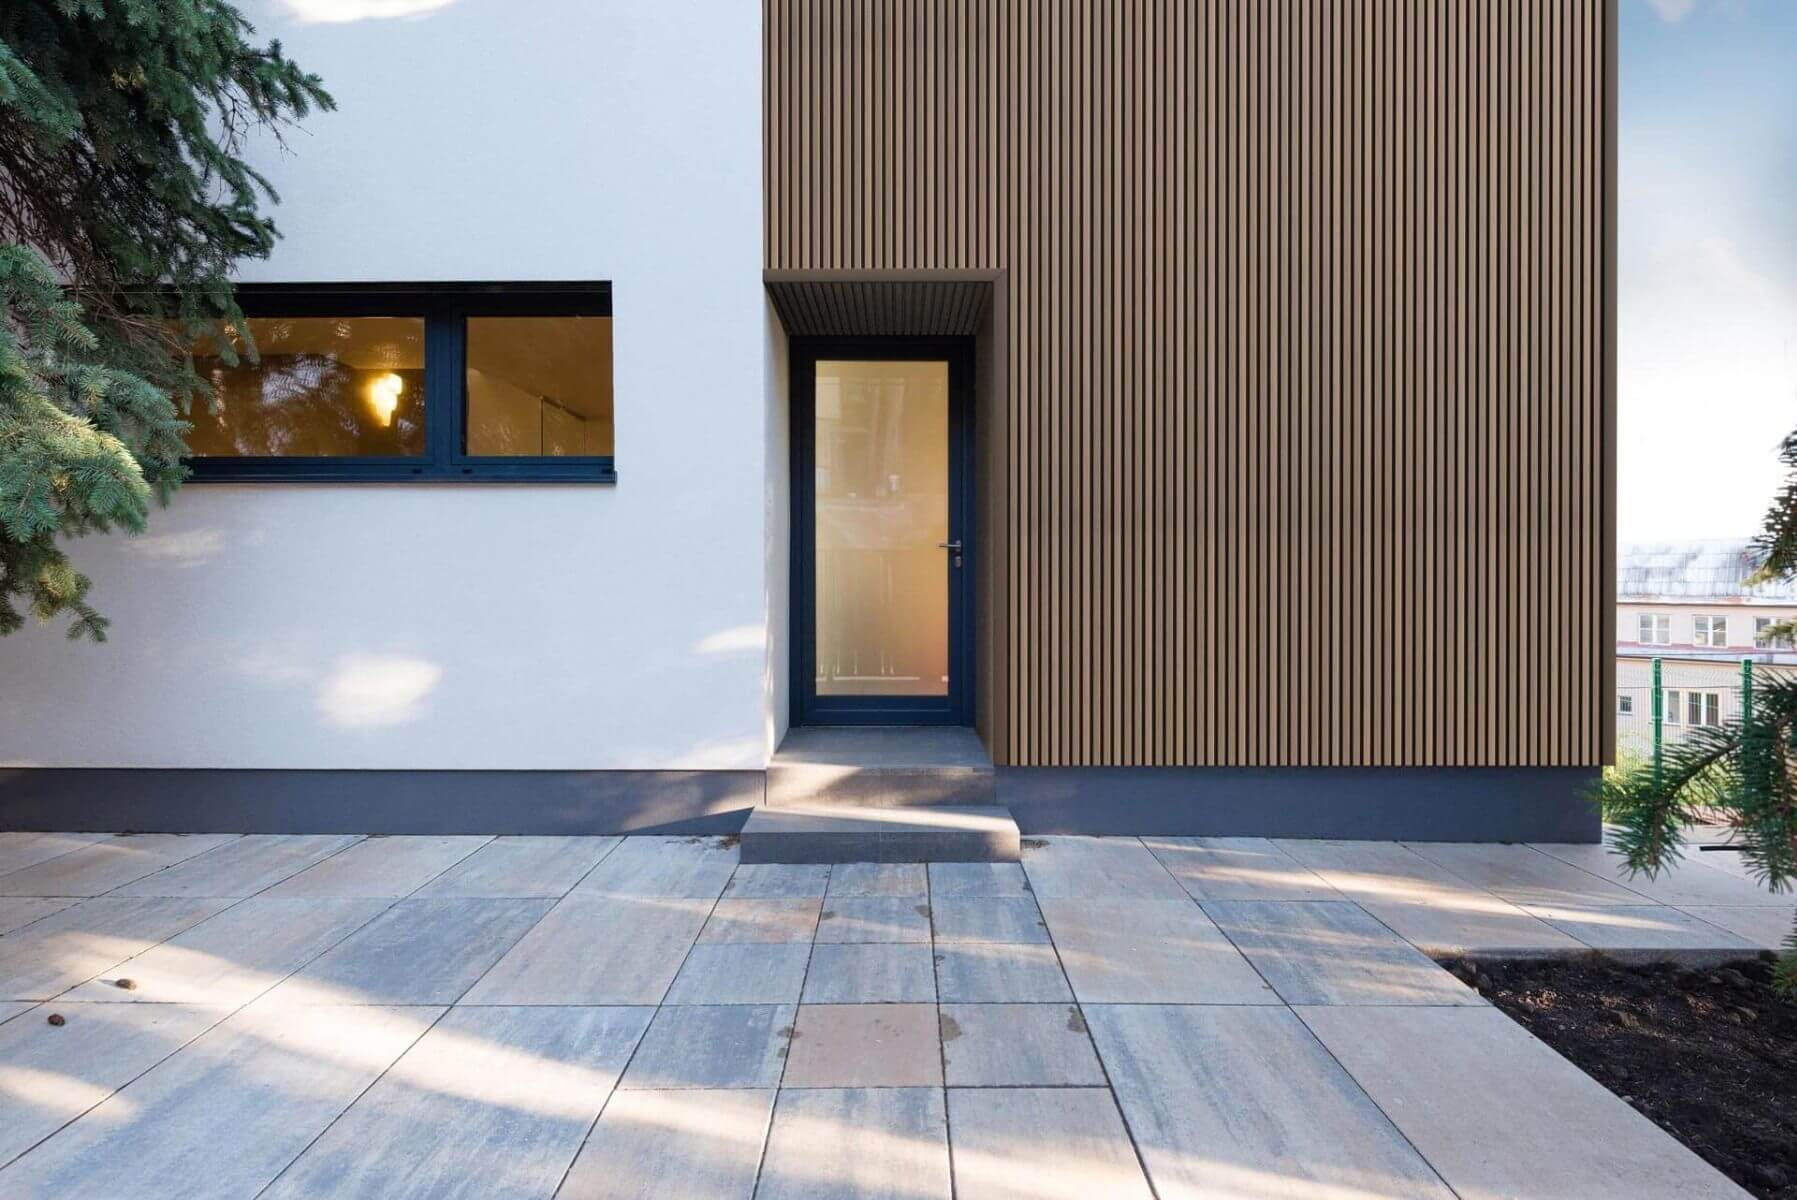 Die modernen Fassaden von WEO vereinen zeitgemäßes Design mit funktionaler Eleganz, wobei die klaren Linien und der minimalistische Ansatz das ästhetische Erscheinungsbild prägen.